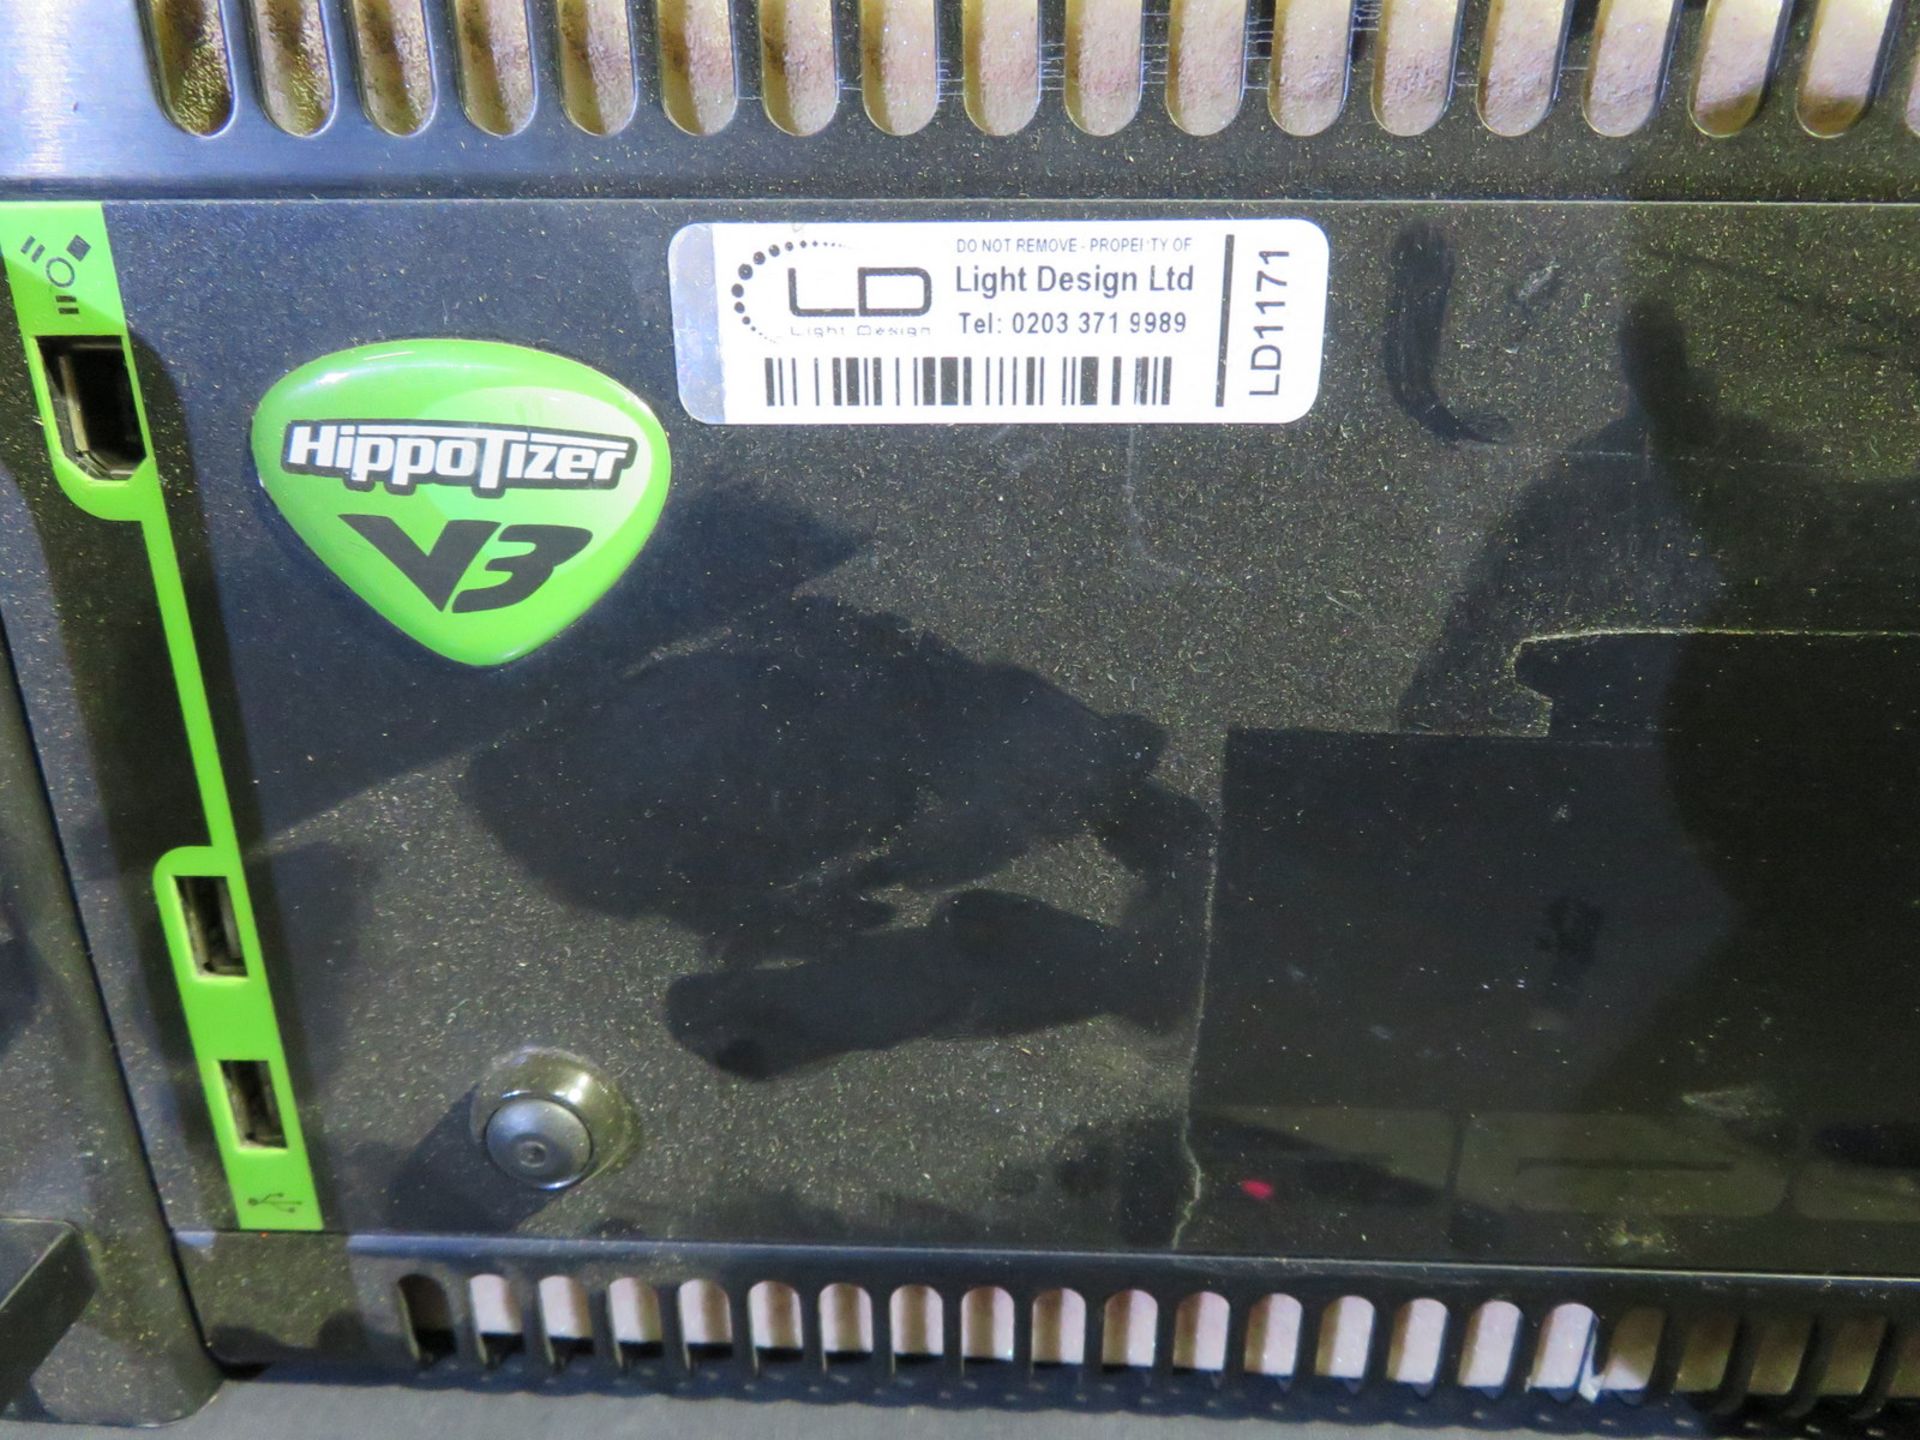 Green Hippo Hipotizer V3 HD Media Server - Image 3 of 8